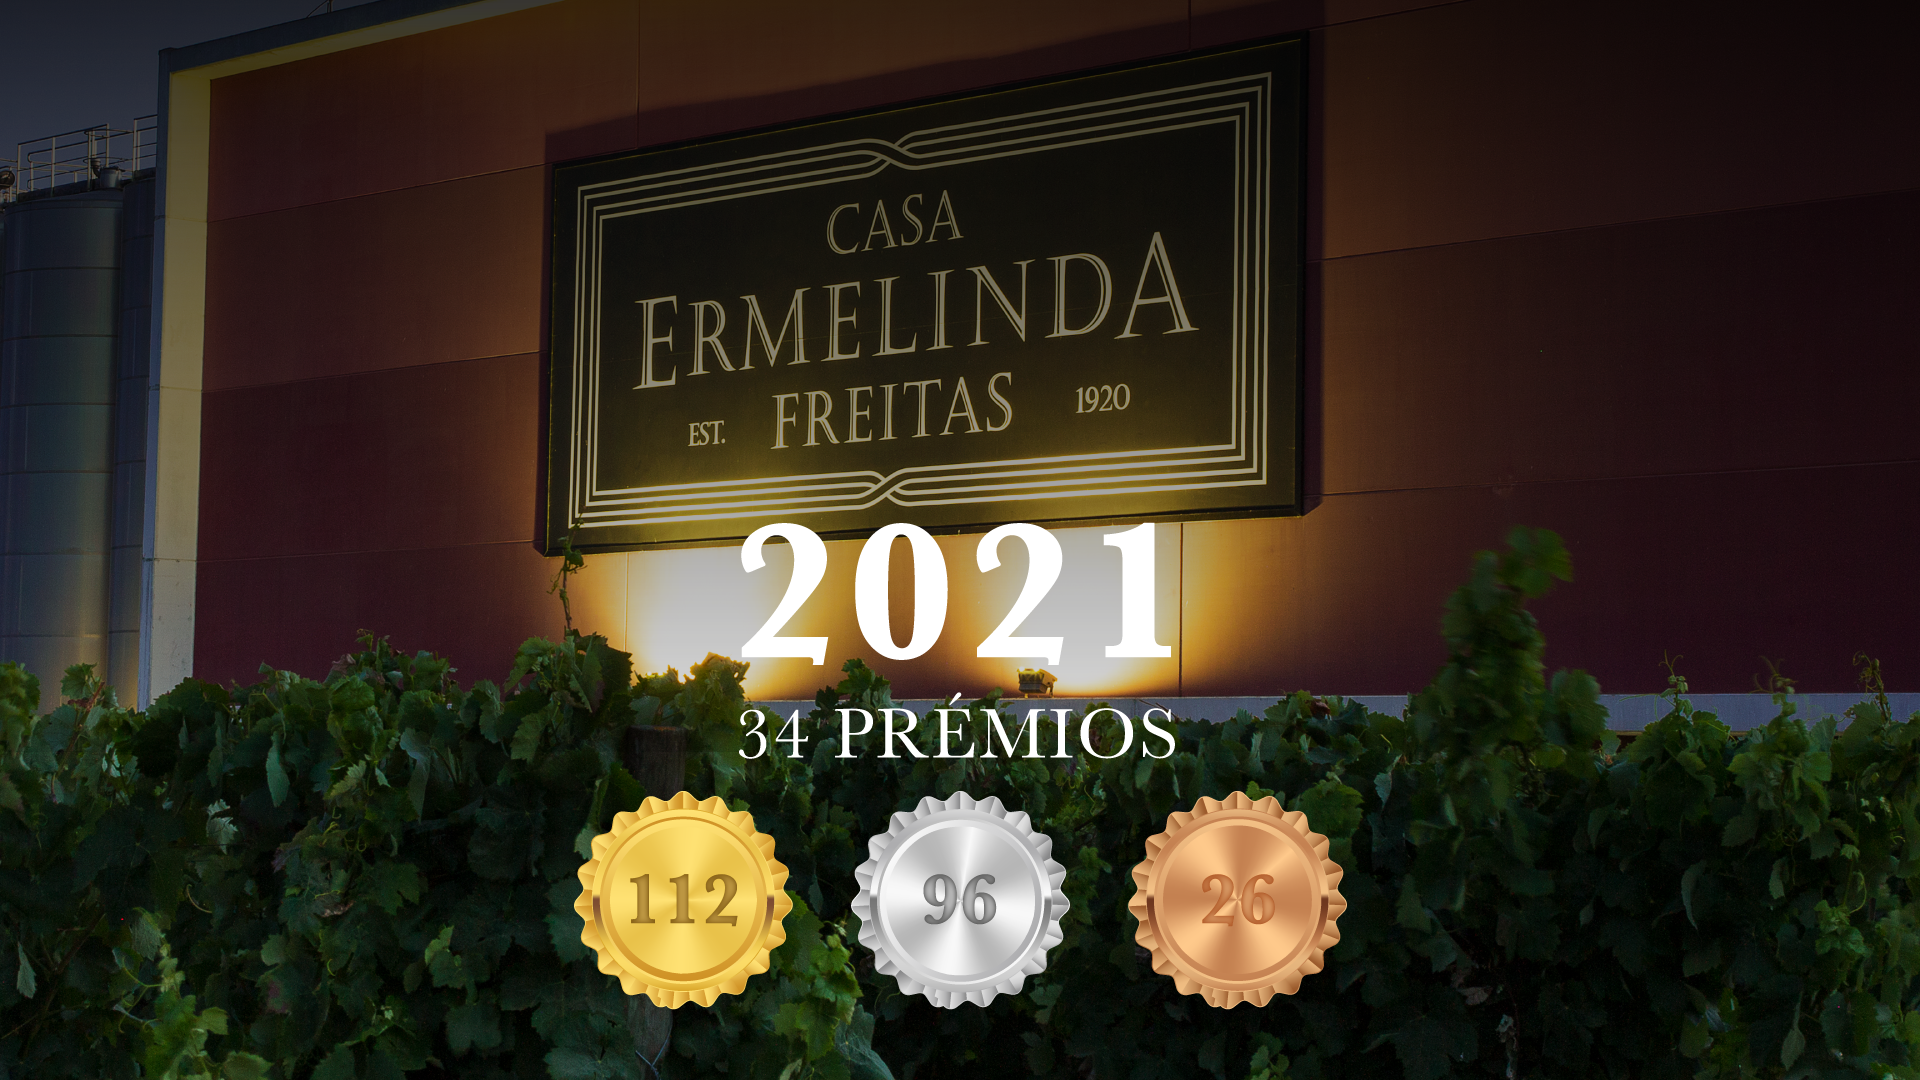 2021 Um ano cheio de vinho e prémios